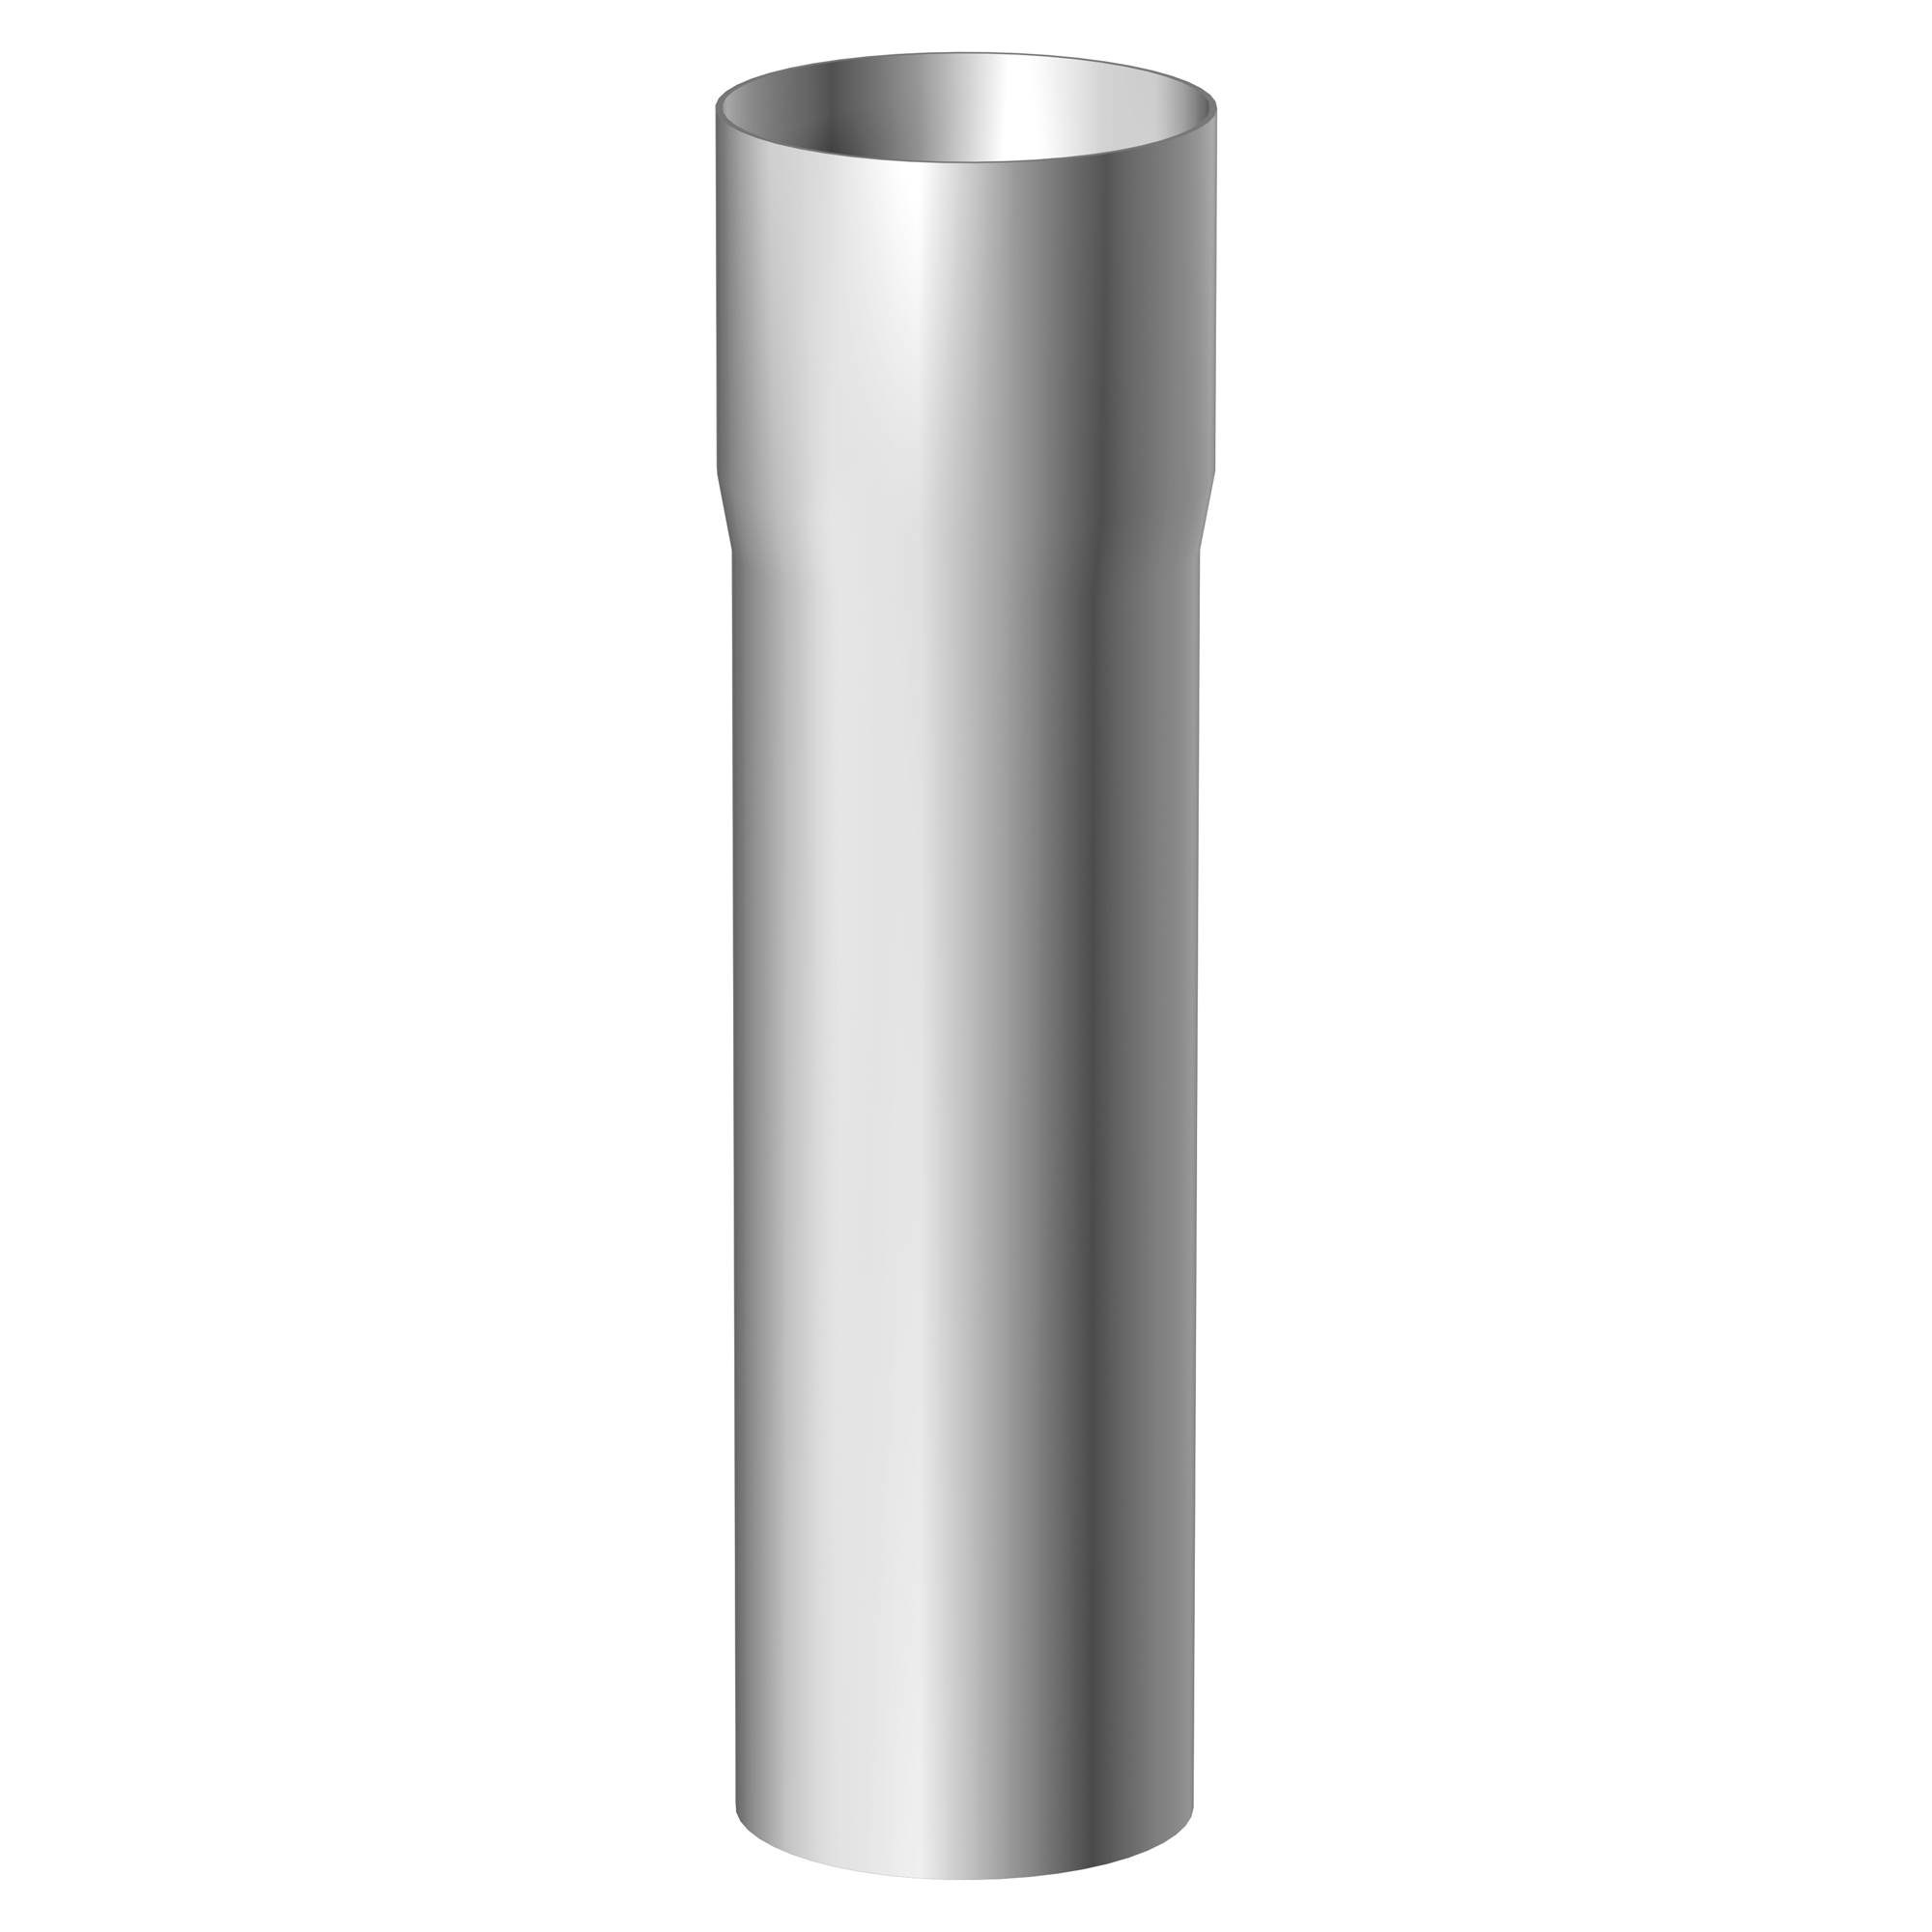 Aluminium-Fallrohr 60 mm + product picture